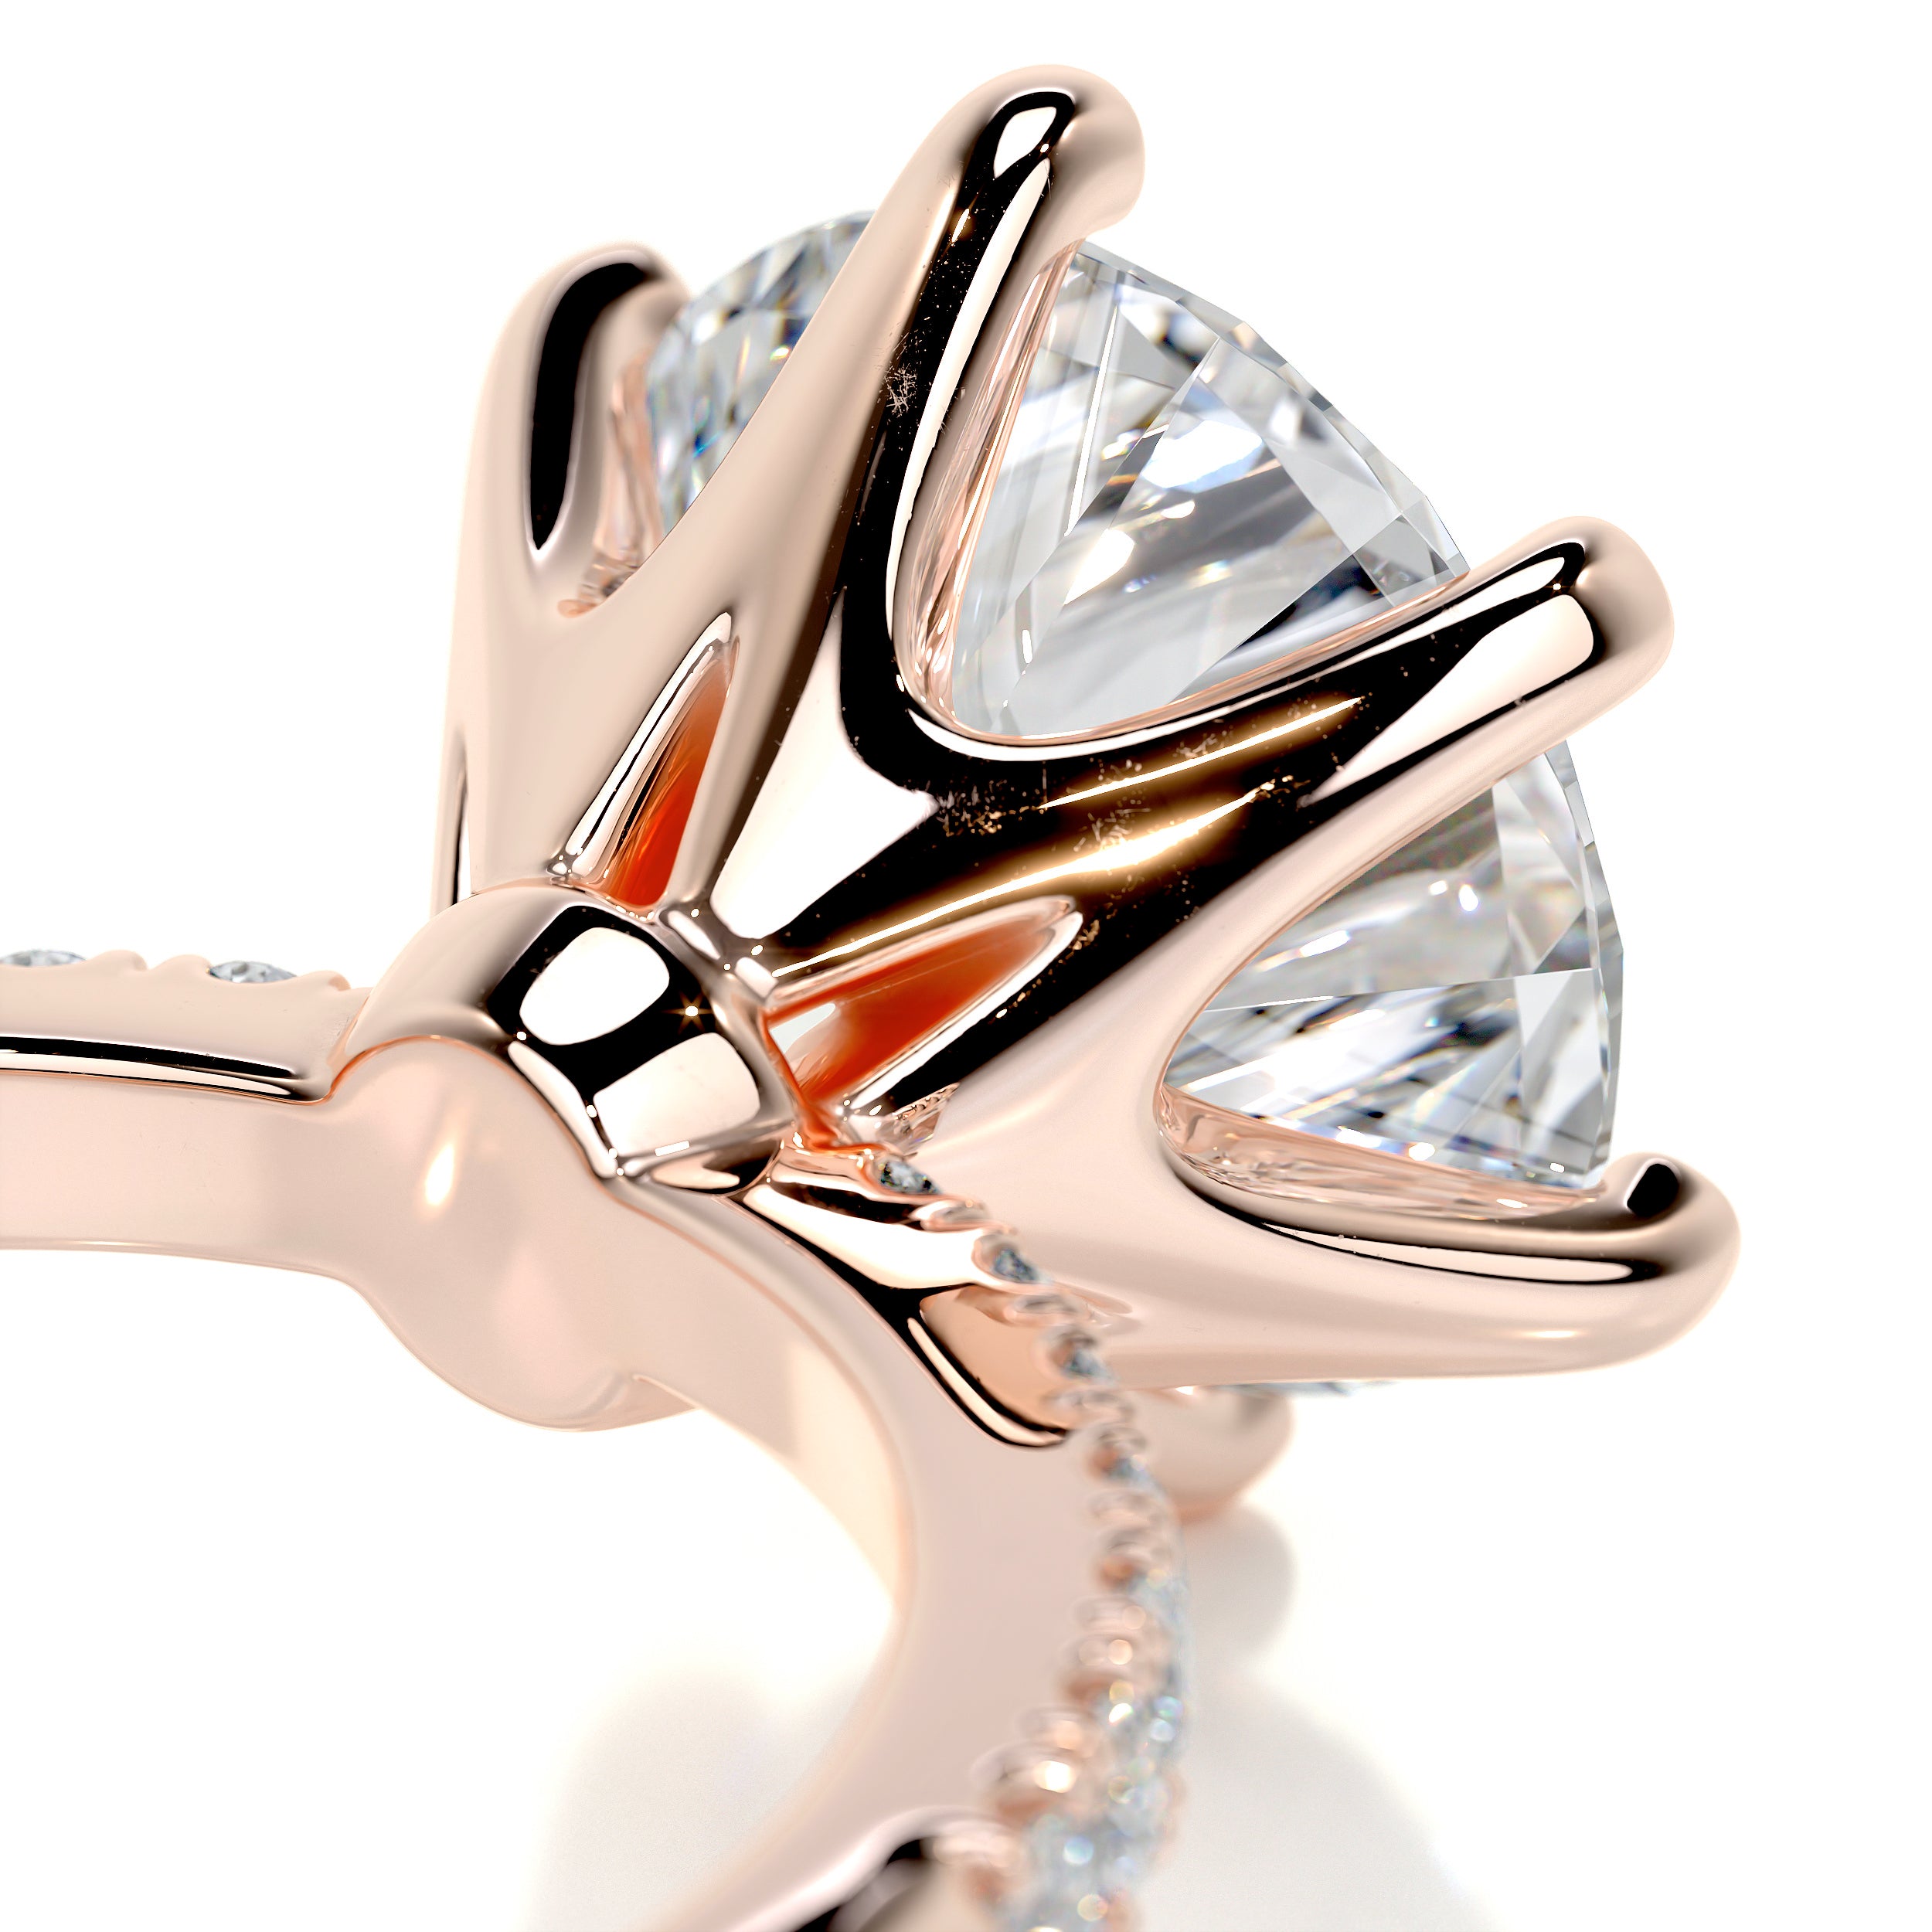 Samantha Diamond Engagement Ring   (3.15 Carat) -14K Rose Gold